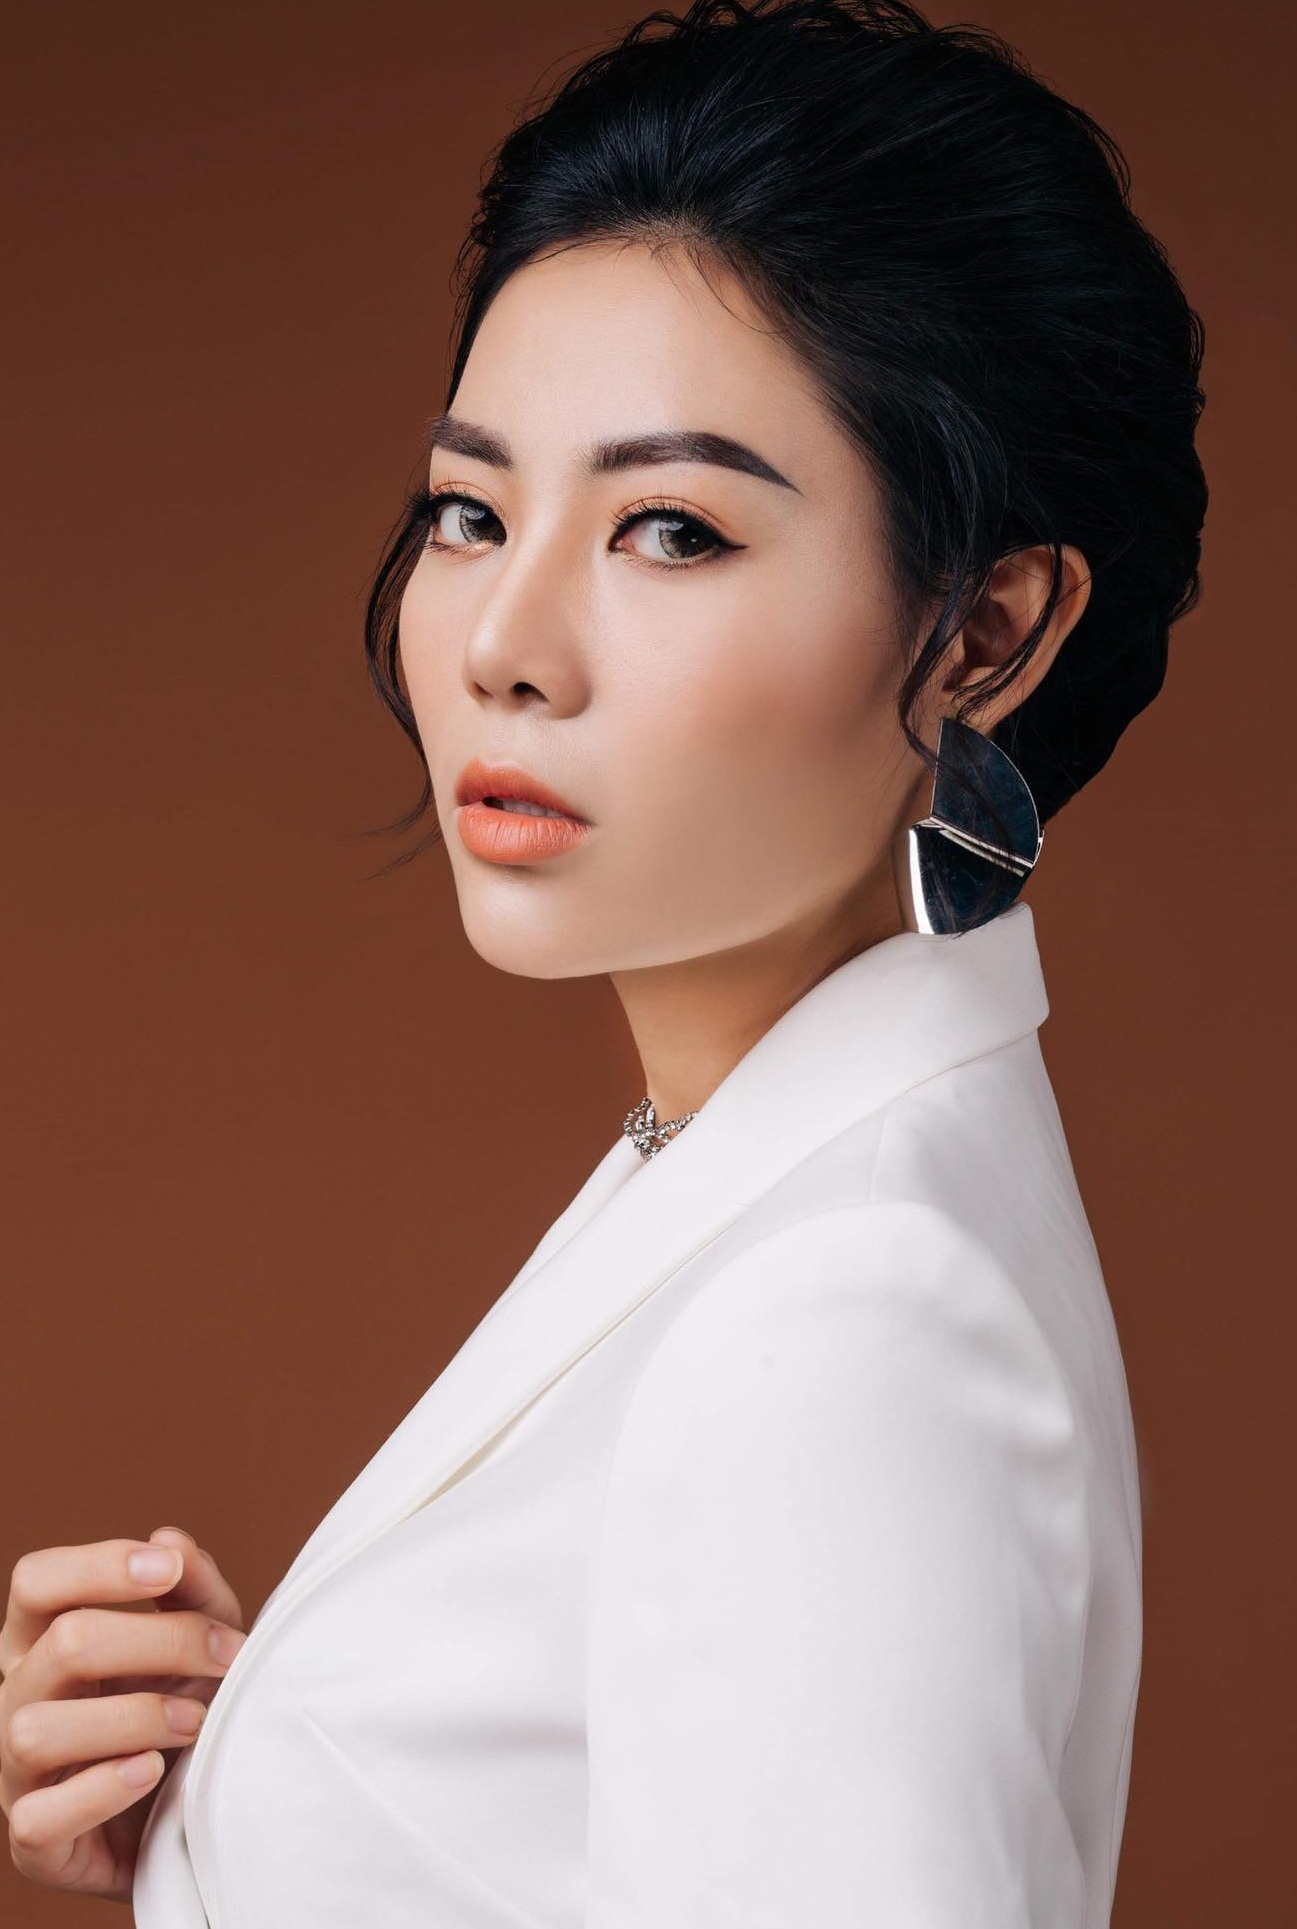 Nữ diễn viên Thanh Hương sẽ cùng nhiều nghệ sĩ tham gia chương trình Mottainai “Trao yêu thương, nhận hạnh phúc” lần thứ 10. Ảnh: BTC